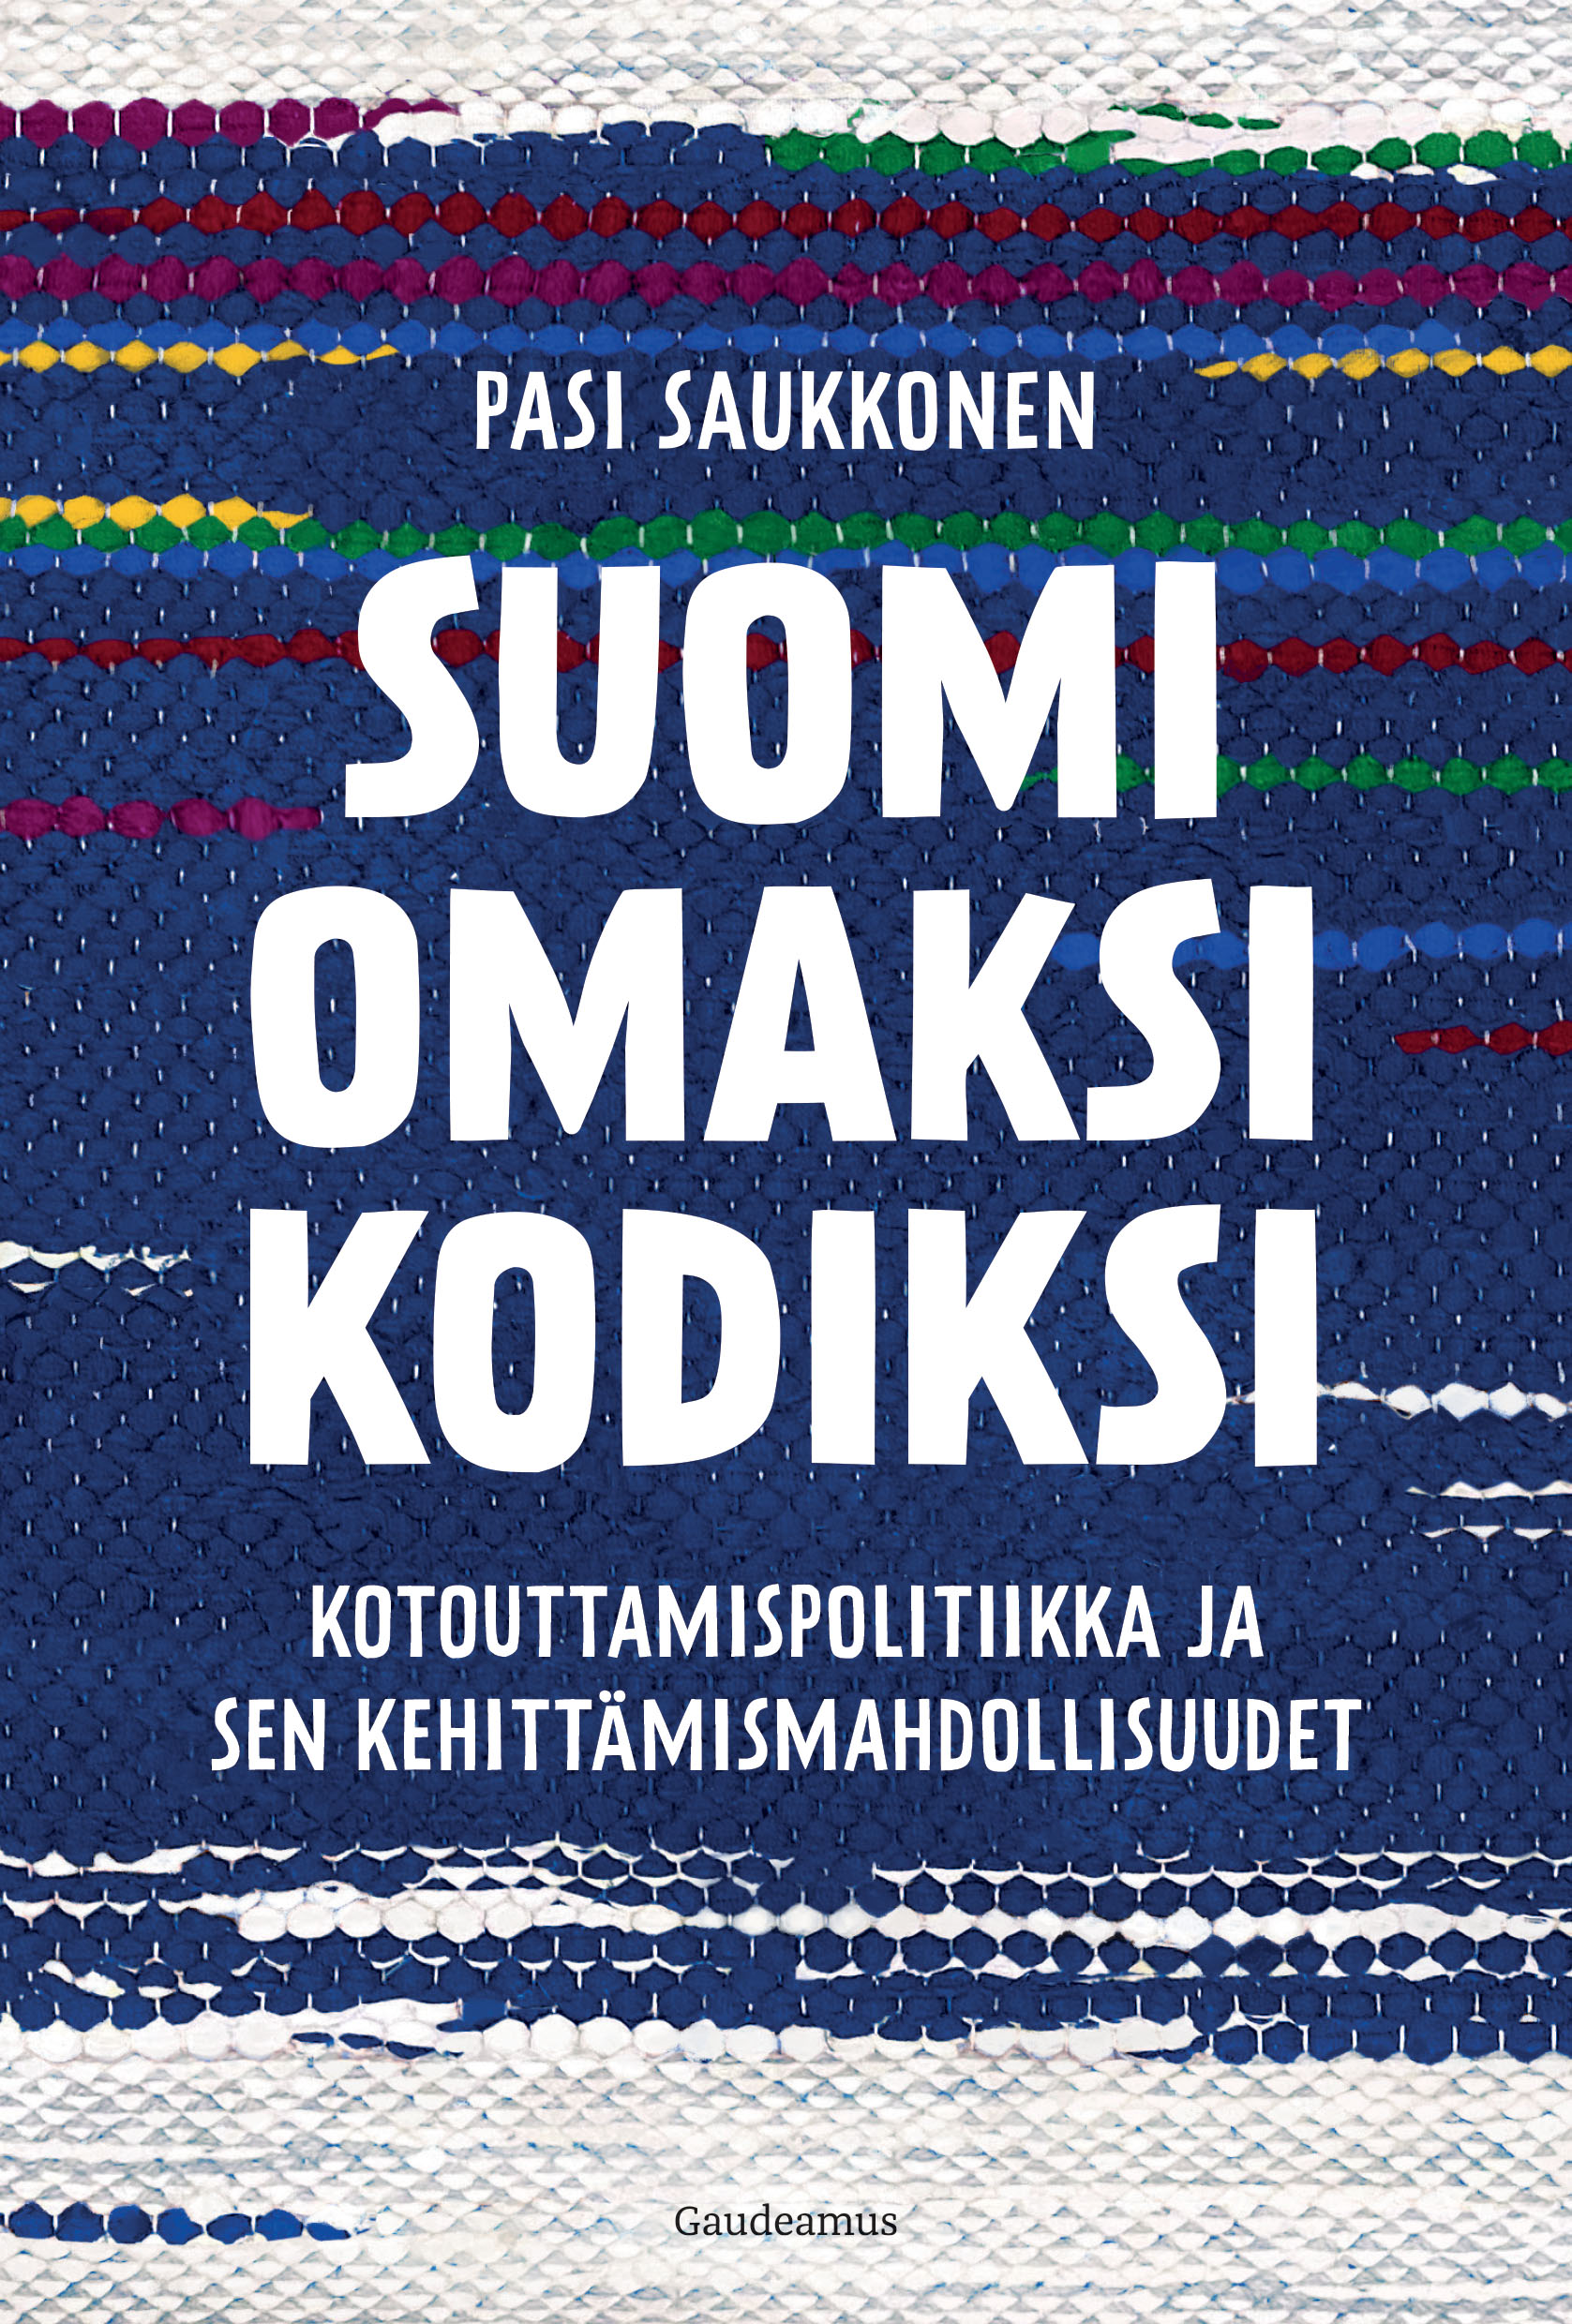 Saukkonen, Pasi - Suomi omaksi kodiksi: Kotouttamispolitiikka ja sen kehittämismahdollisuudet, e-bok